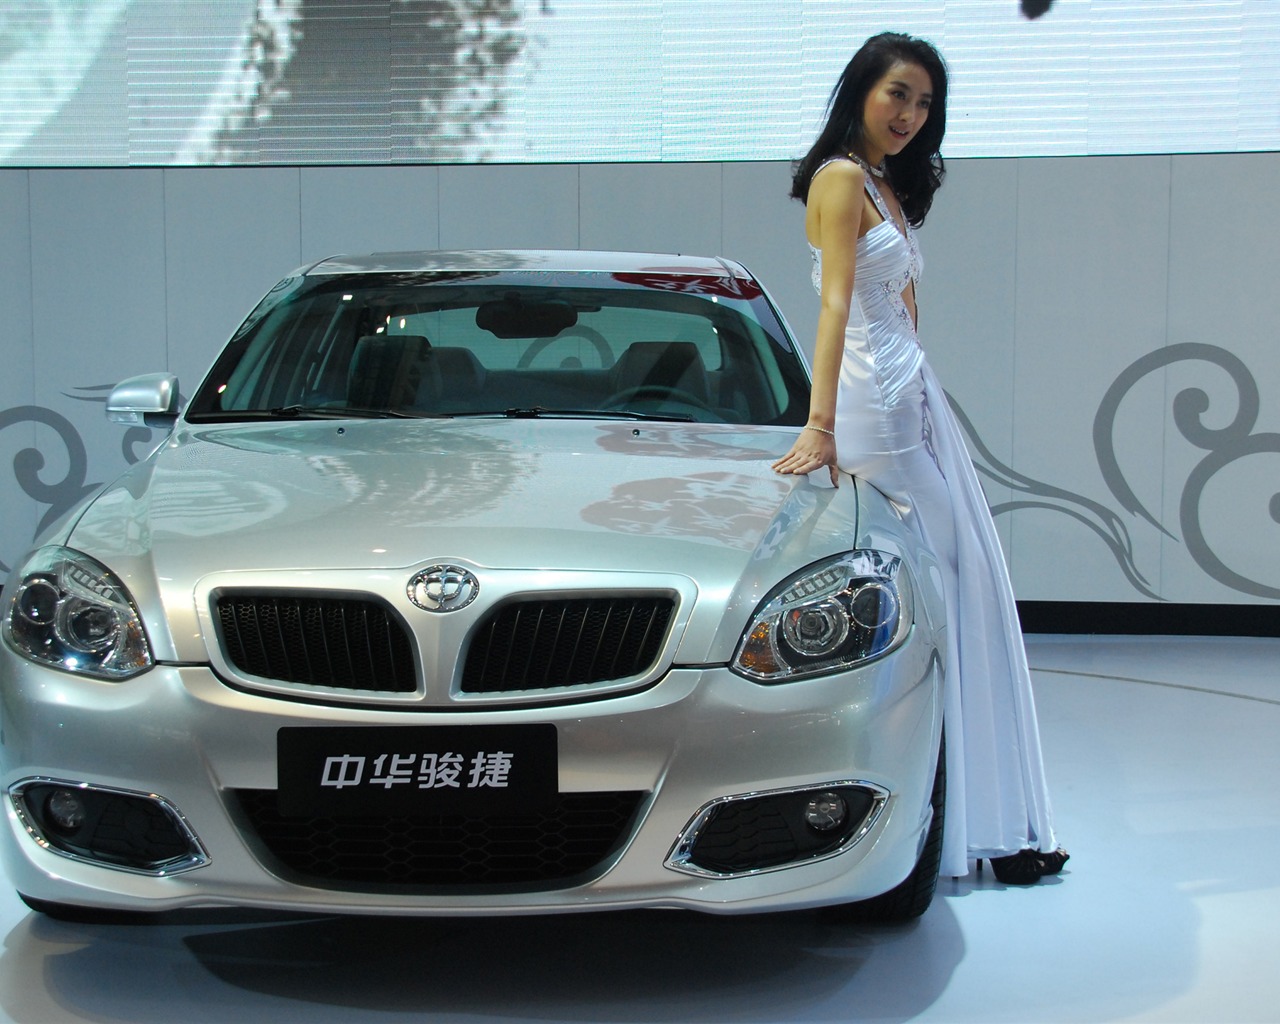 2010 Beijing International Auto Show (1) (z321x123 works) #19 - 1280x1024